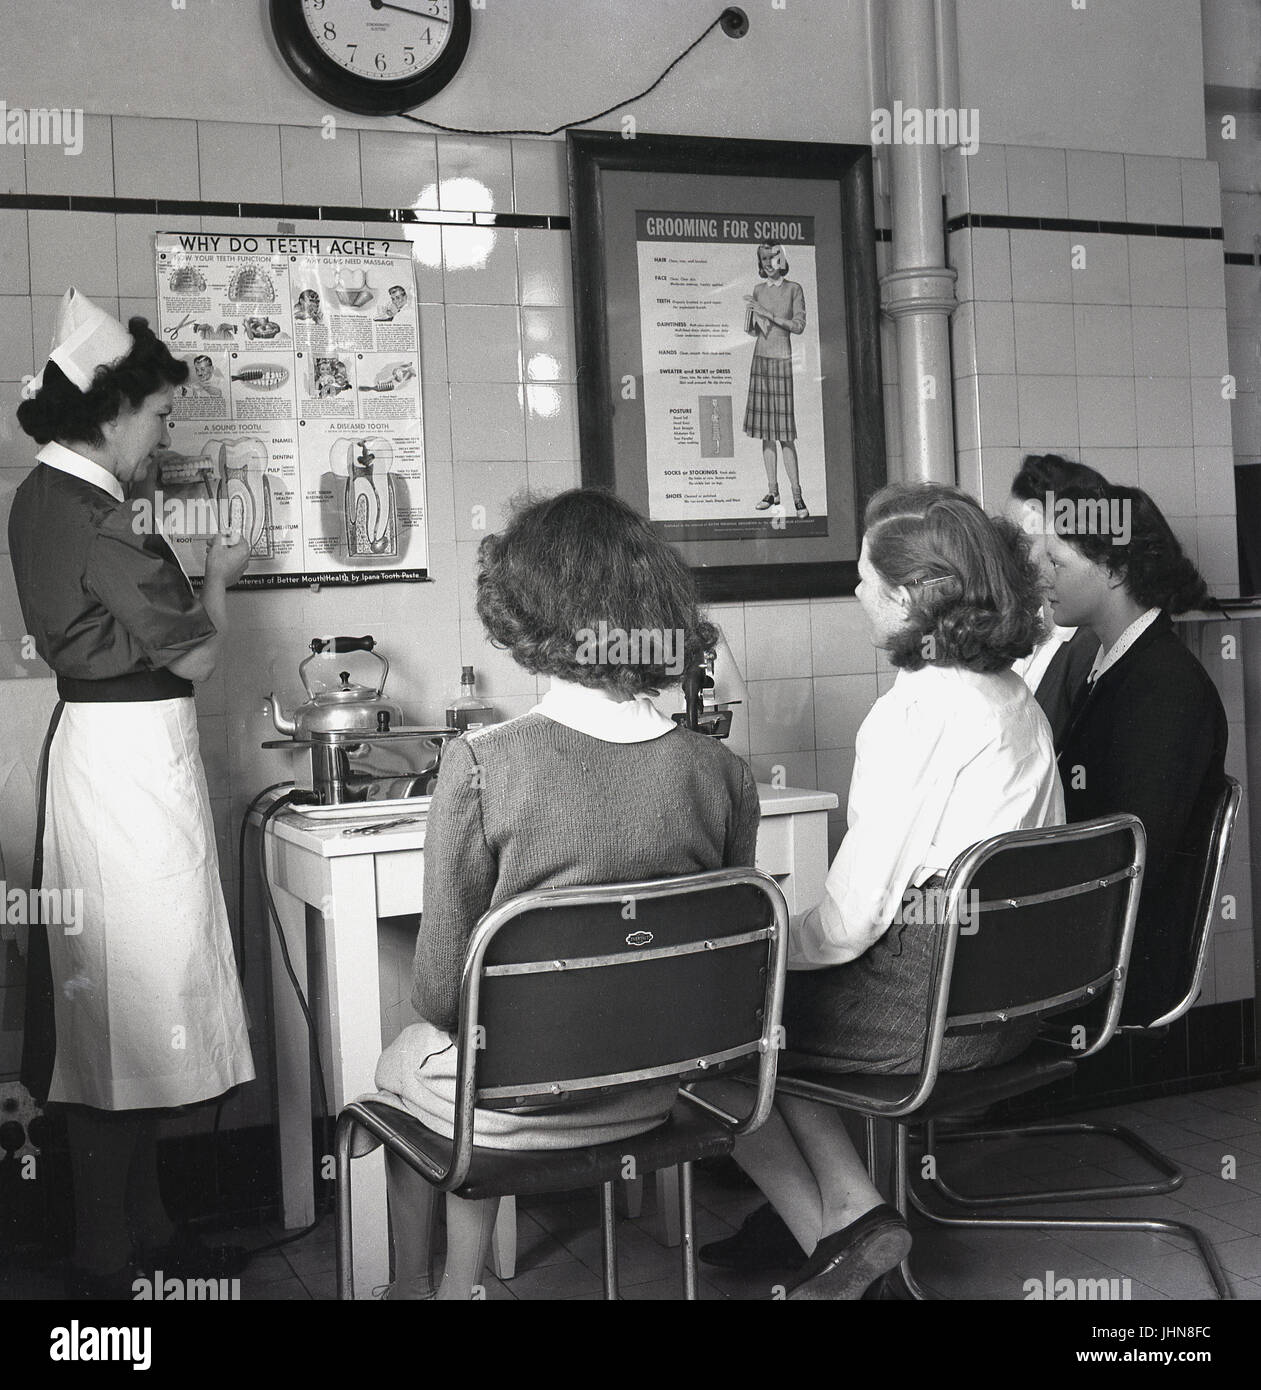 der 1950er Jahre, England, erläutern historische, vier weibliche Studenten eine Lehrerausbildung Hochschule hören Sie eine Krankenschwester Schule Schüler Zähne und wie Sie potenzielle Probleme zu identifizieren. Stockfoto